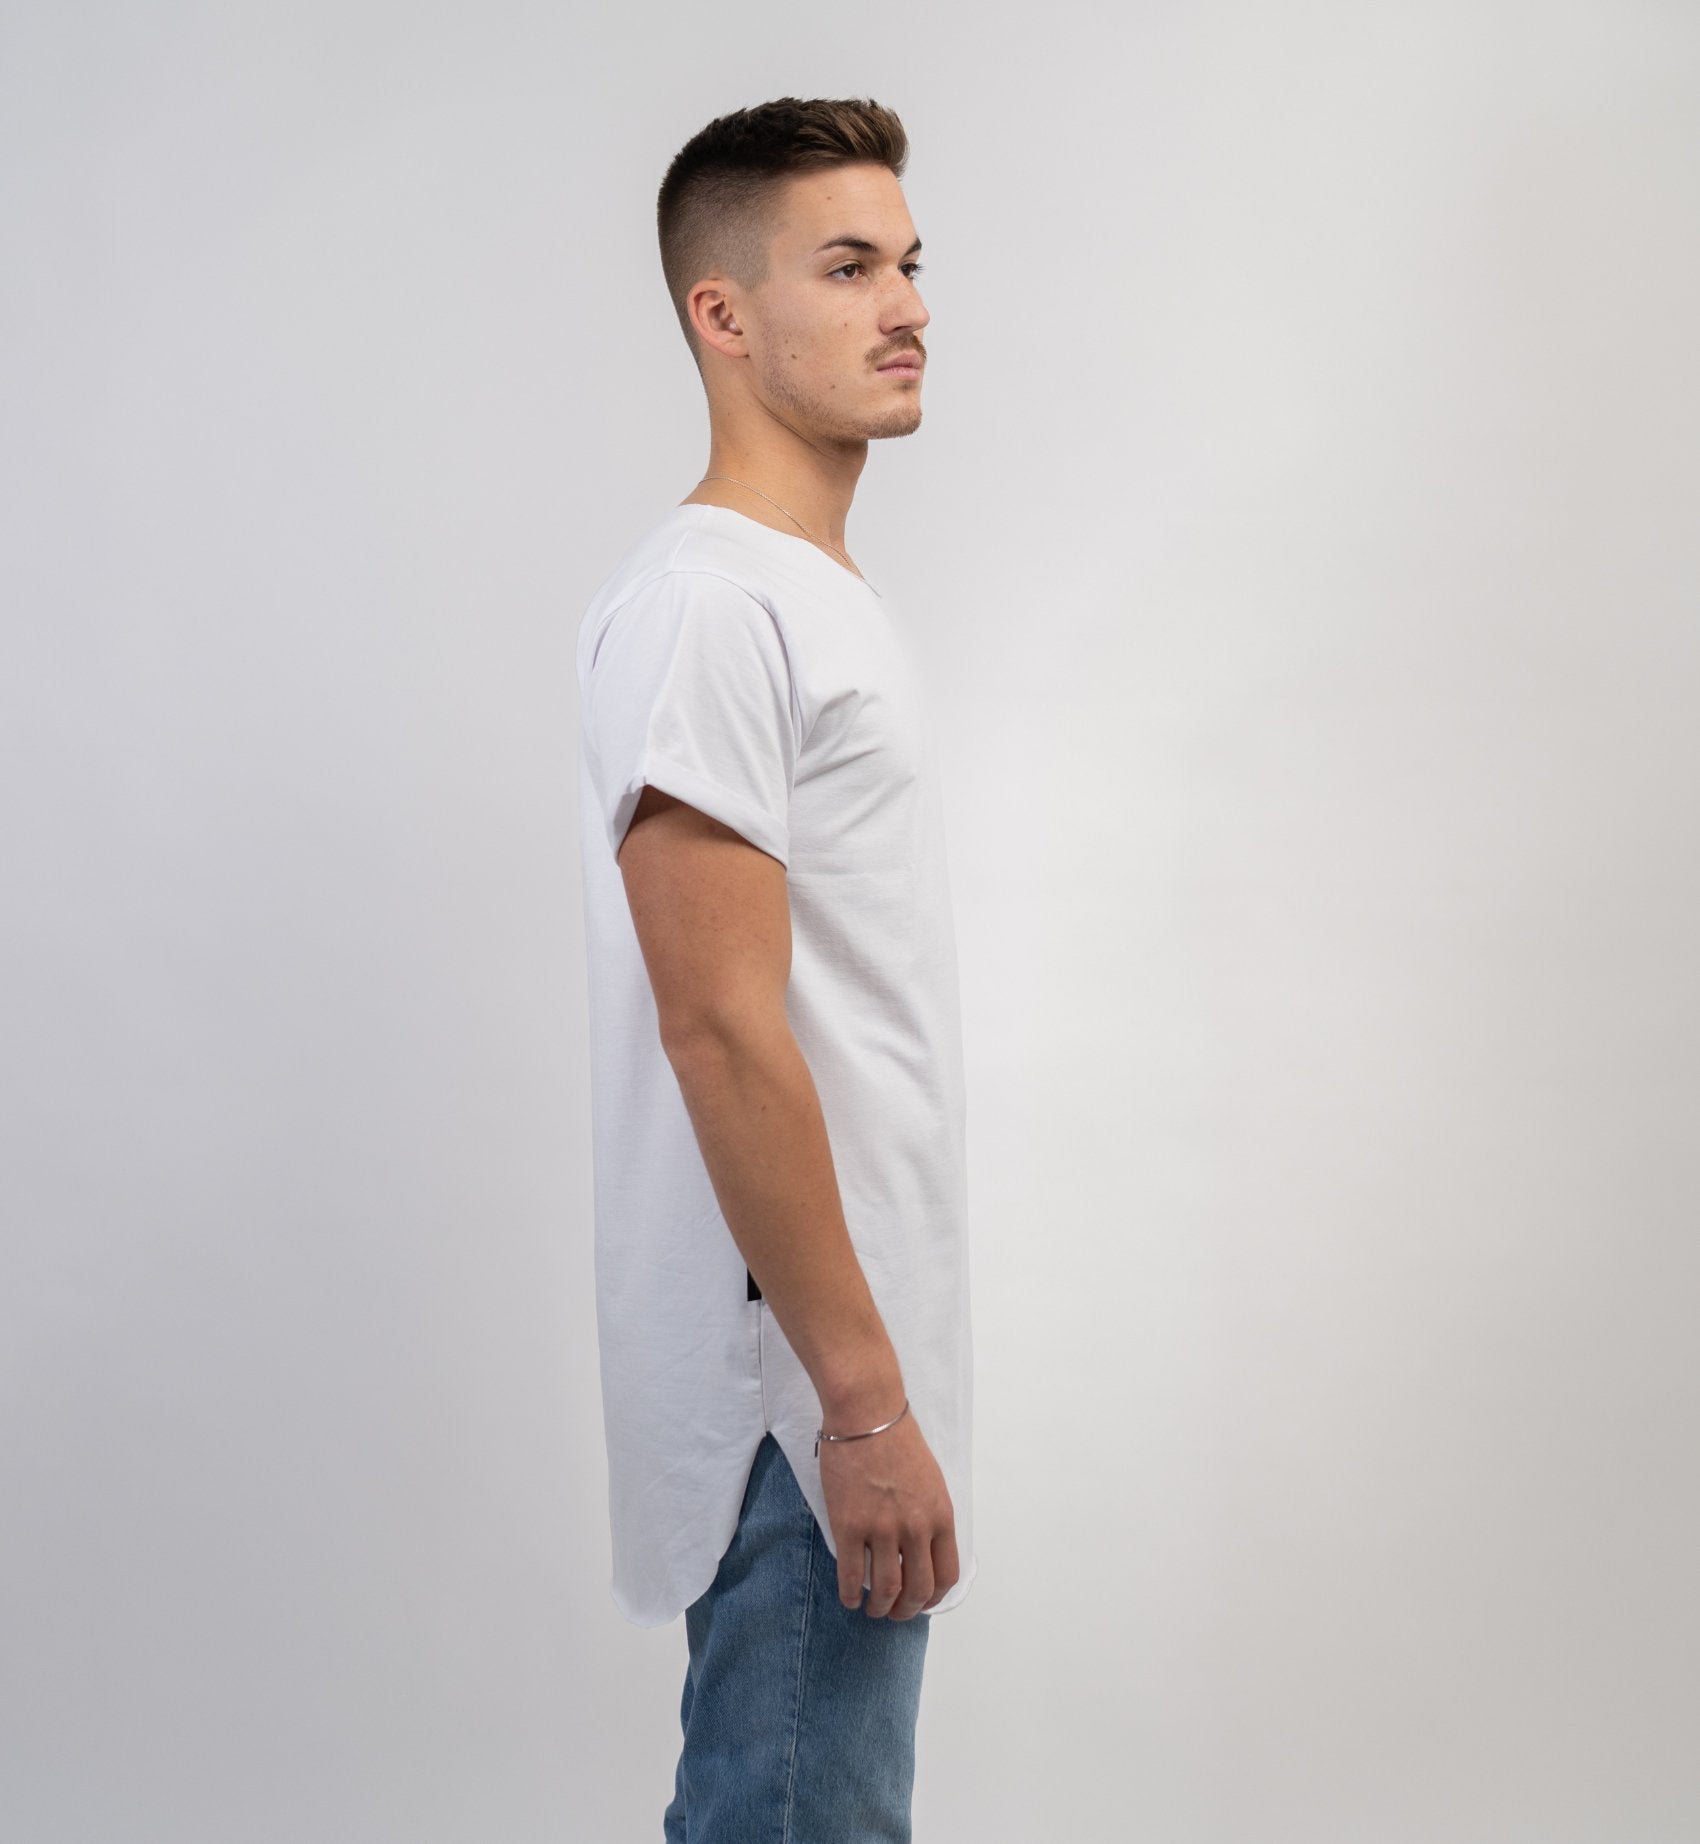 NB Scholes Oversize Shirt White - new-bav